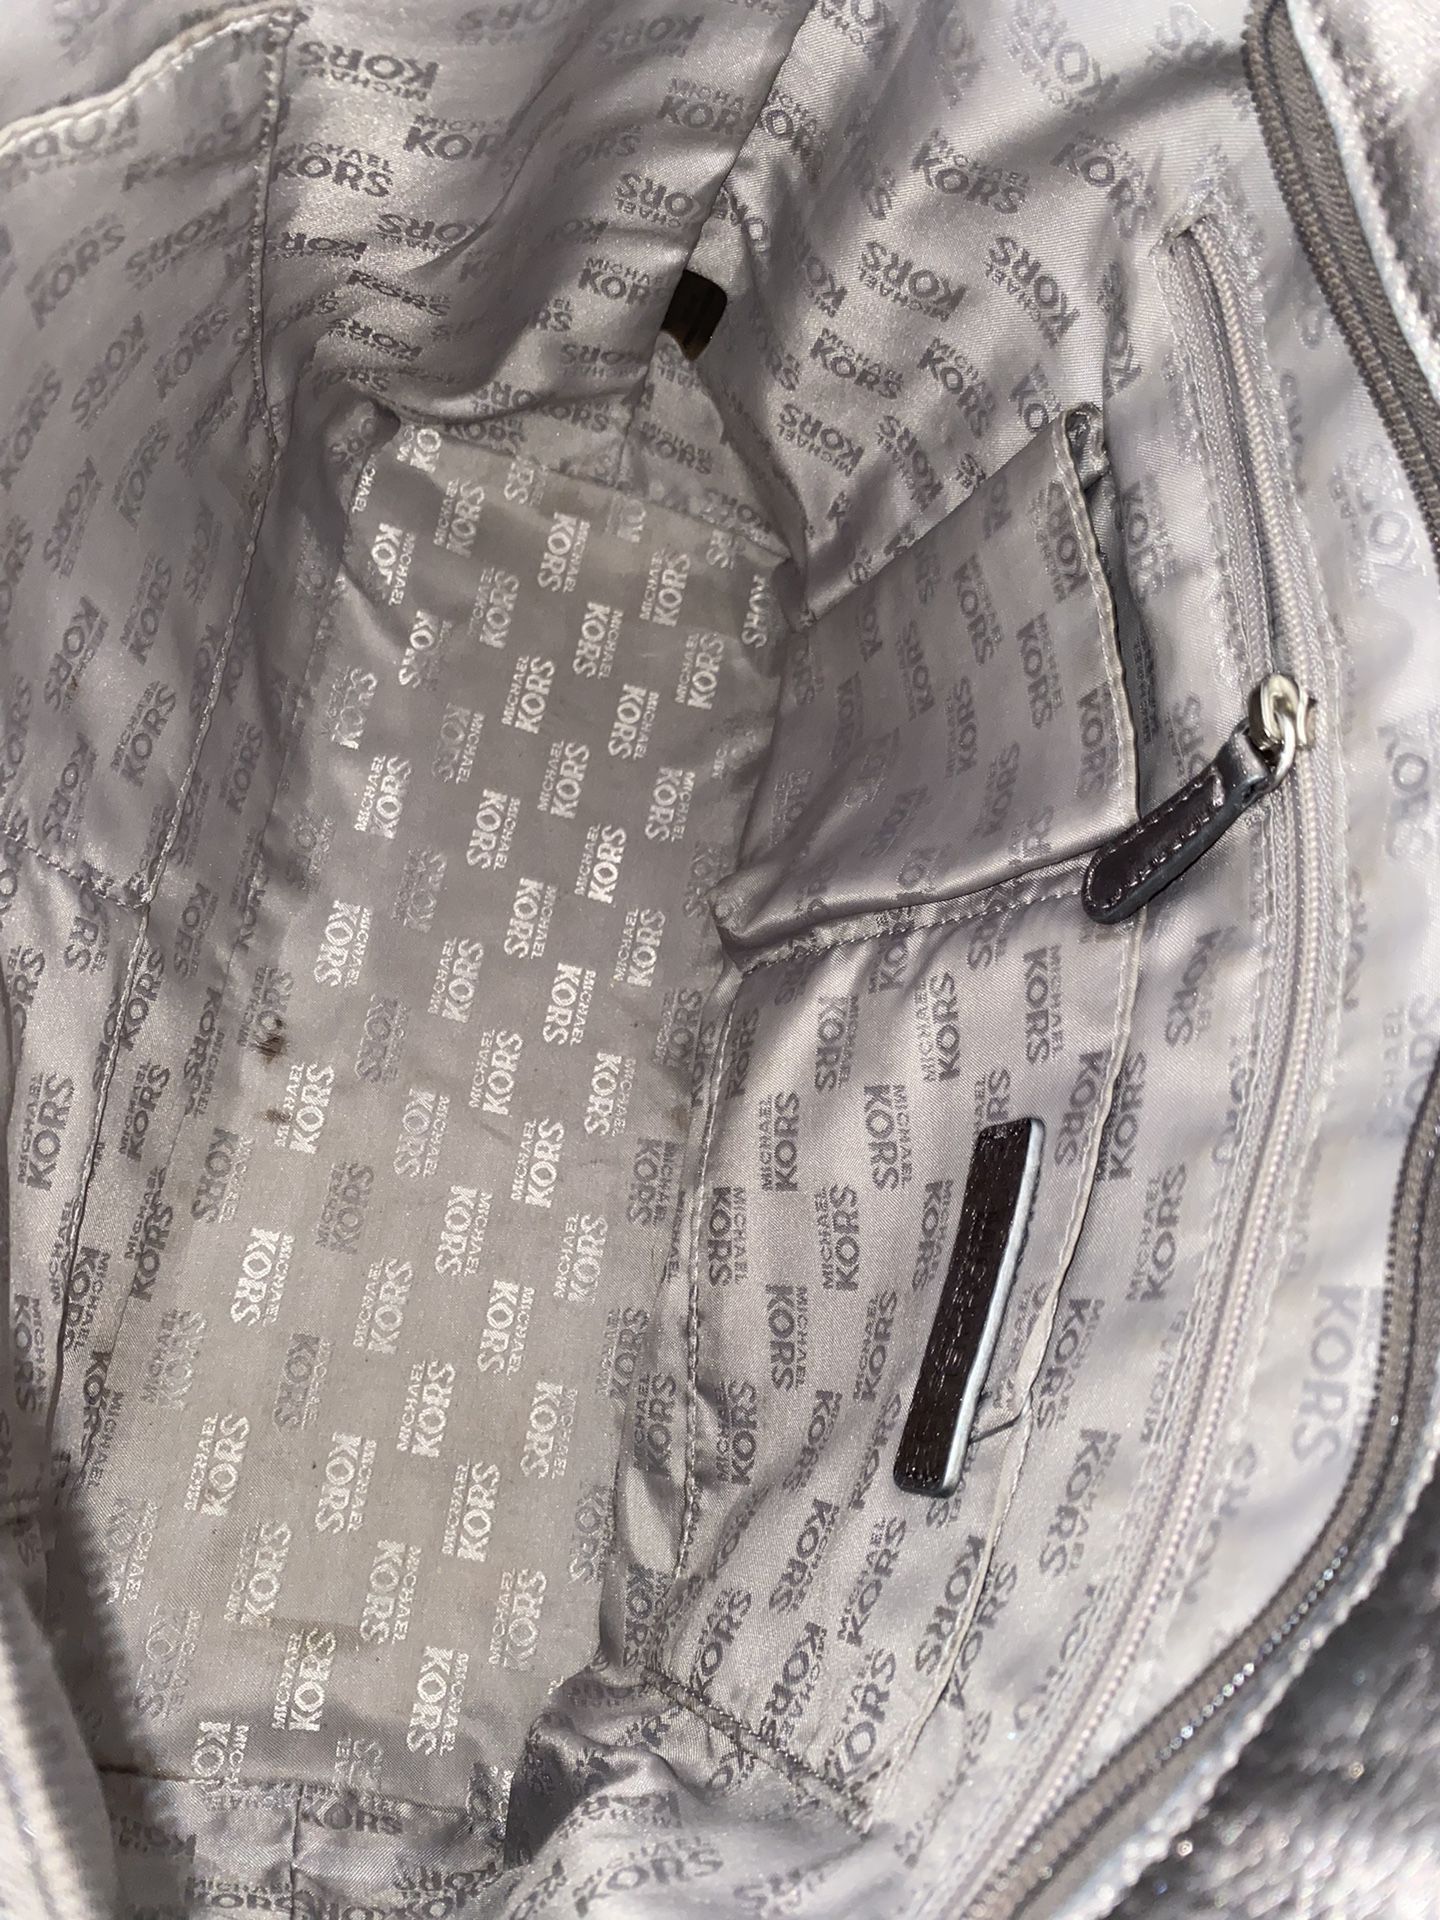 Michael Kors Mirella Tote Bag for Sale in Miami, FL - OfferUp